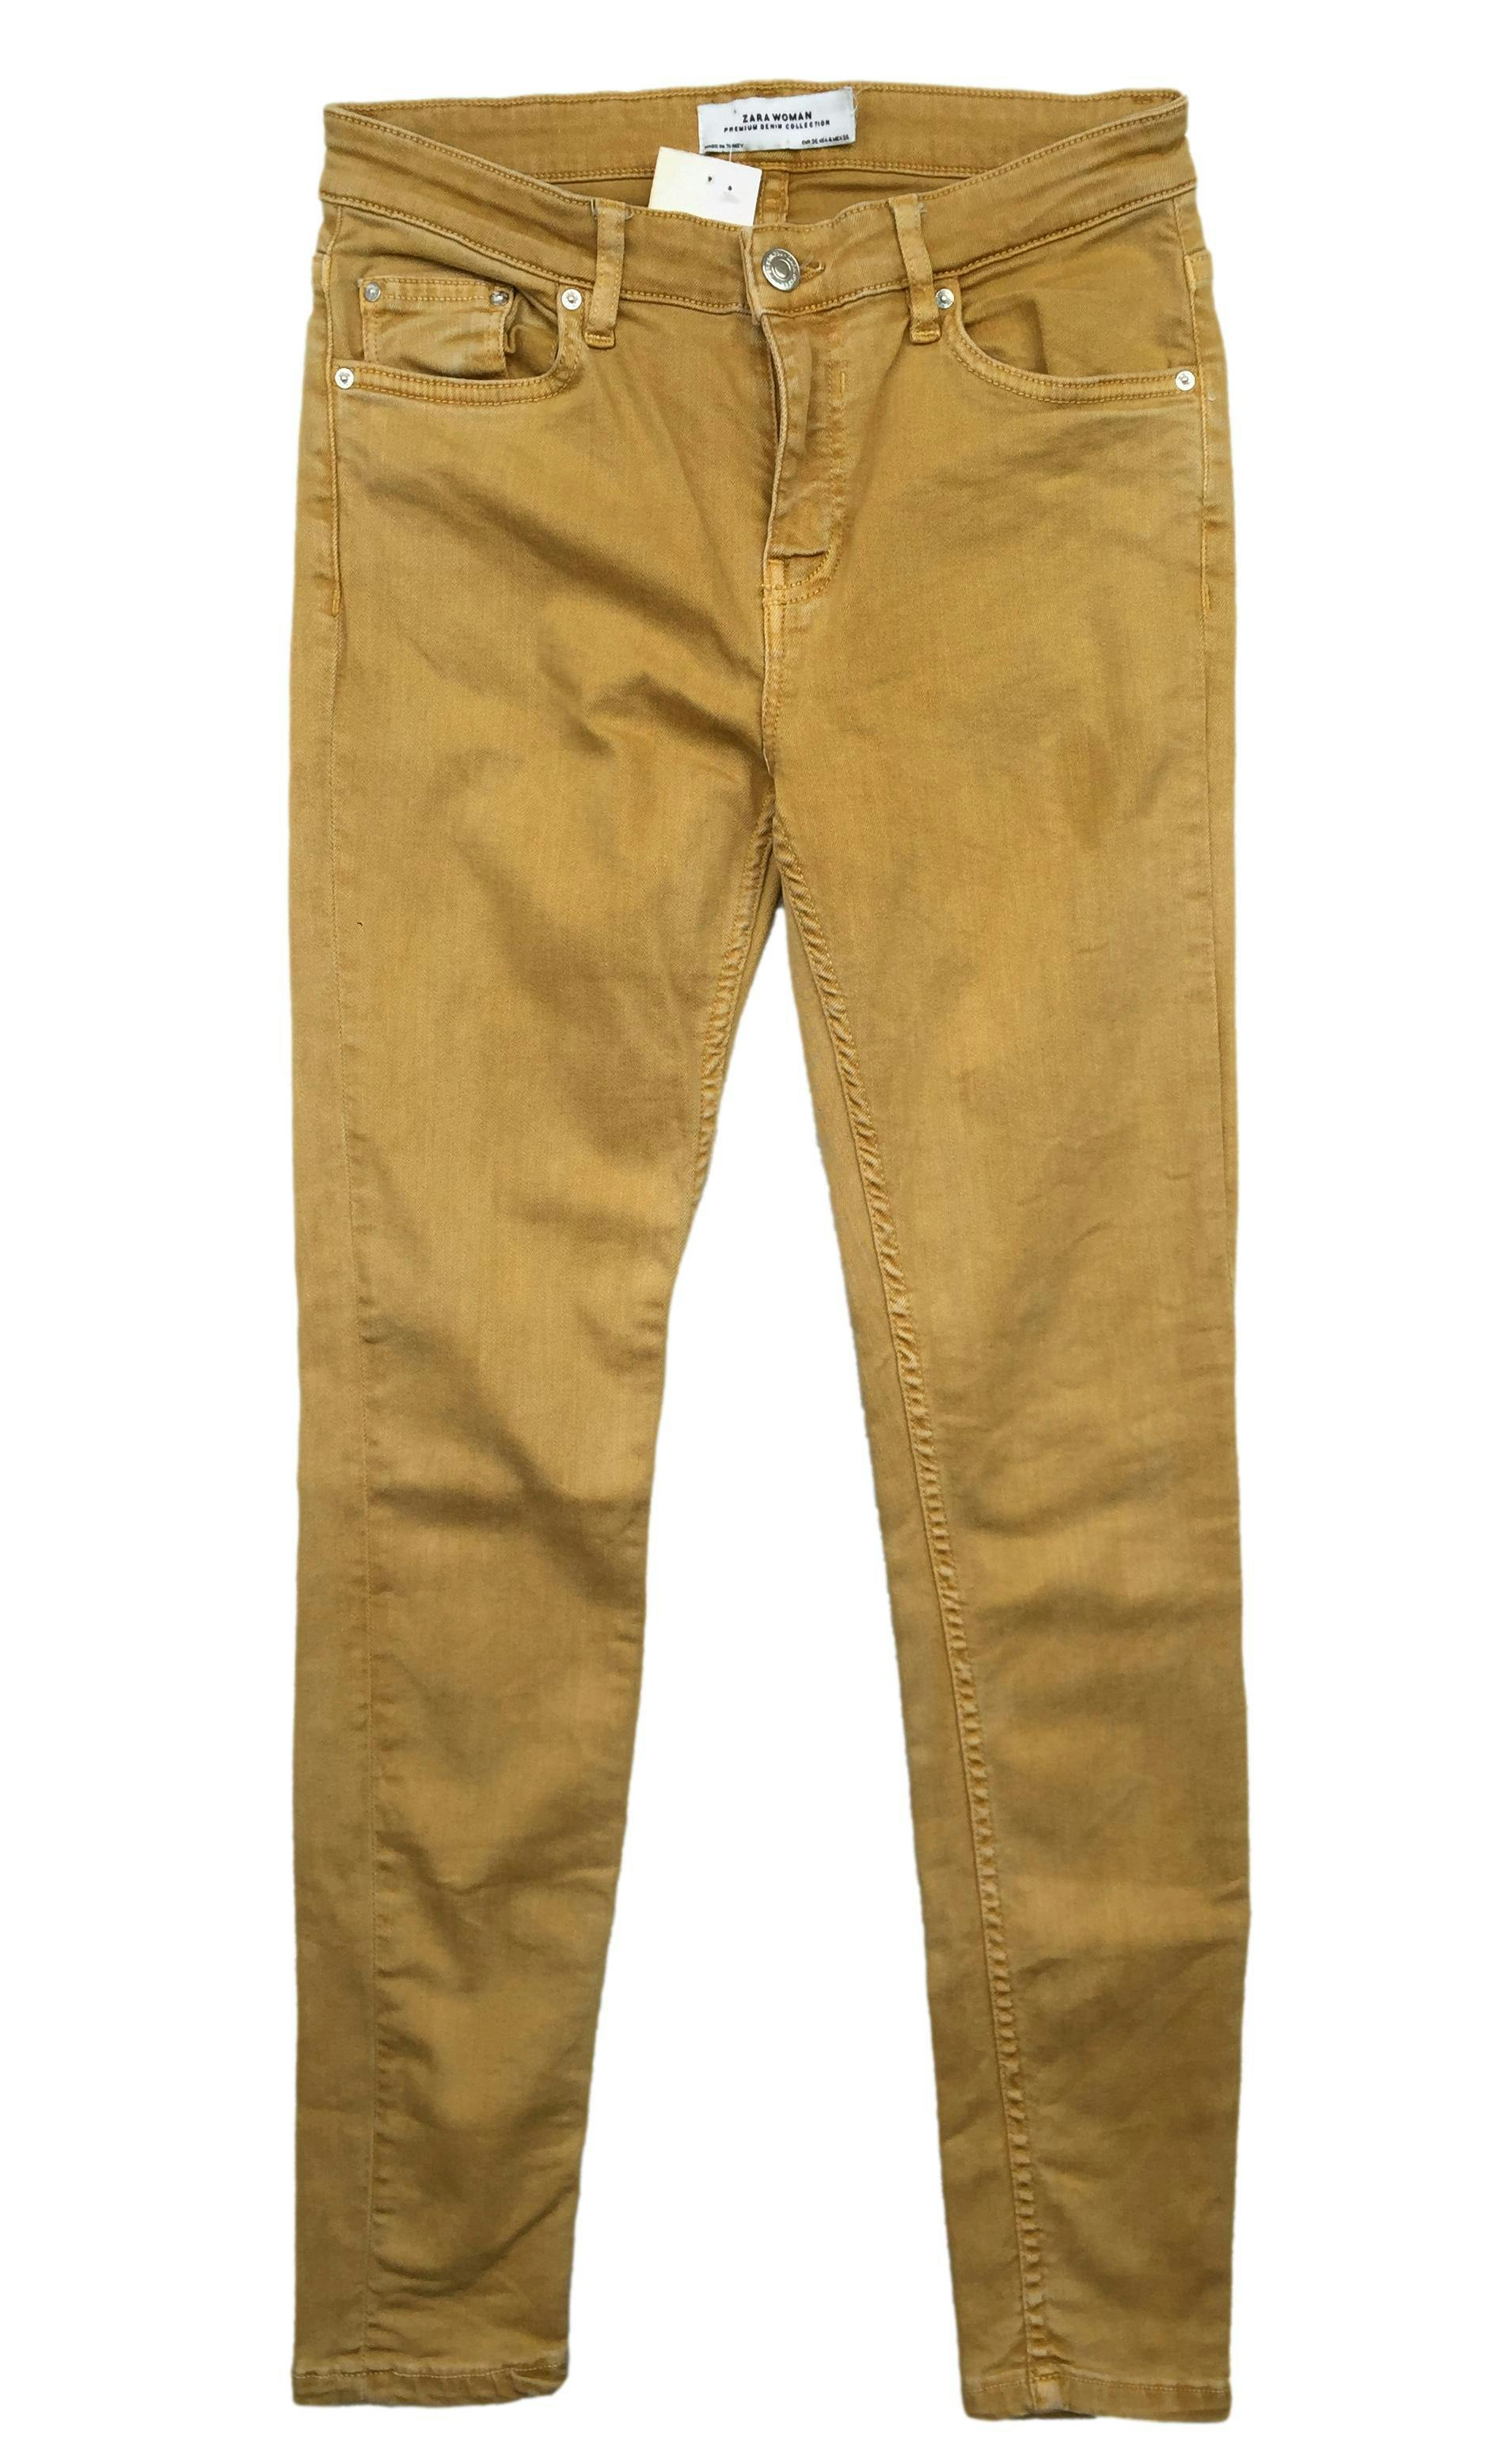 Pantalón jean Zara amarillo, four pockets. Cintura 70 cm, Tiro 23 cm, Largo 92 cm.